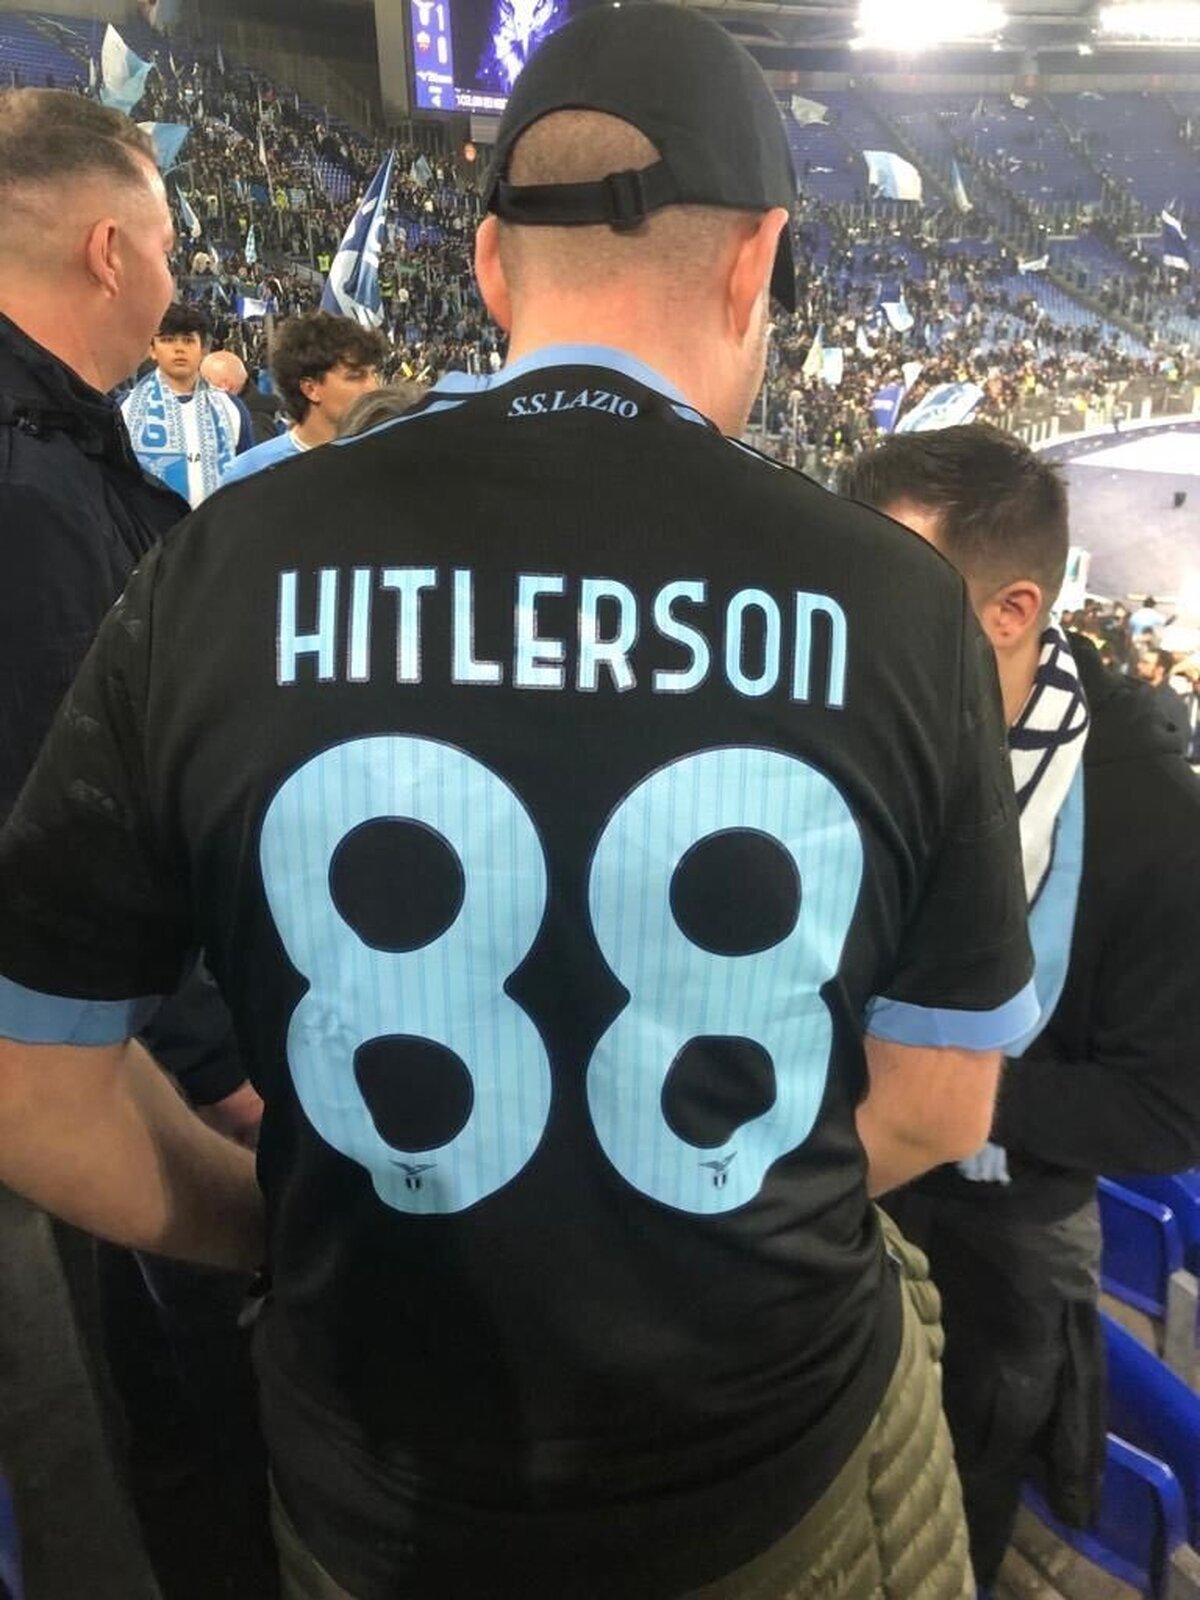 اقدام عجیب هوادار فوتبال با پوشیدن لباس هیتلر! / تاوان سنگین برای رفتار جنجالی در دربی (+عکس)